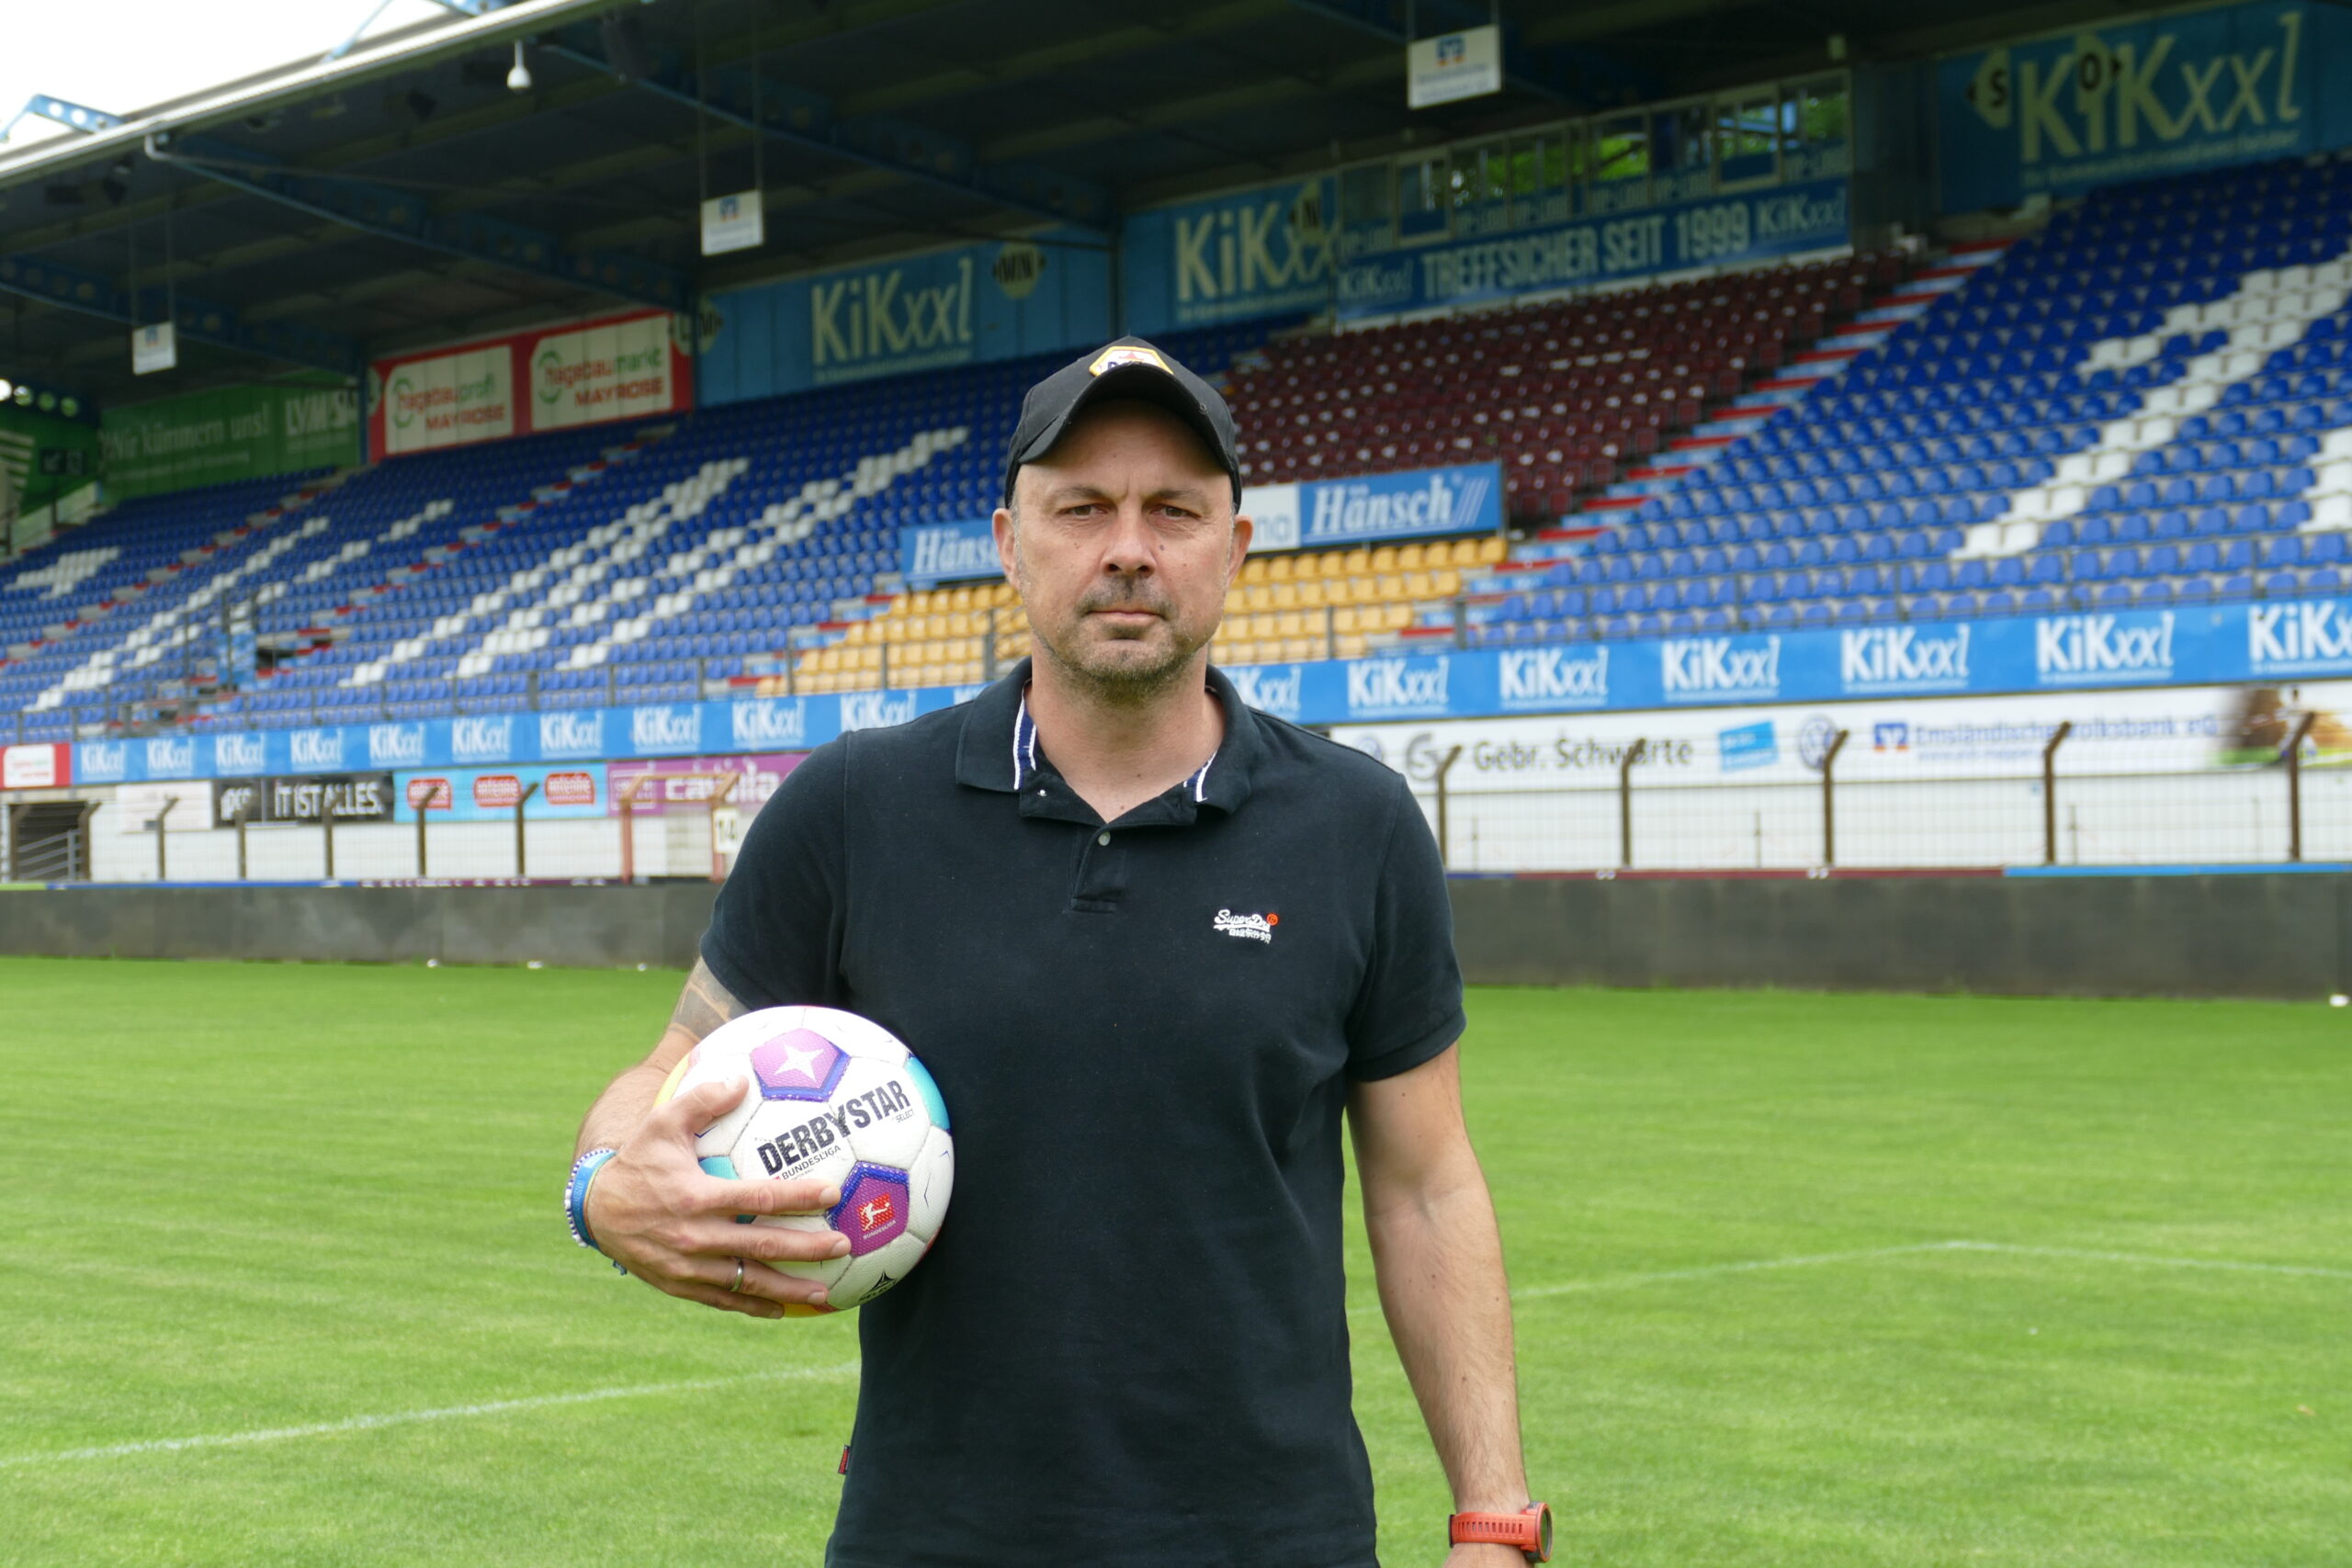 Torwarttrainer mit viel Erfahrung: Marcus Antczak
Foto: SV Meppen